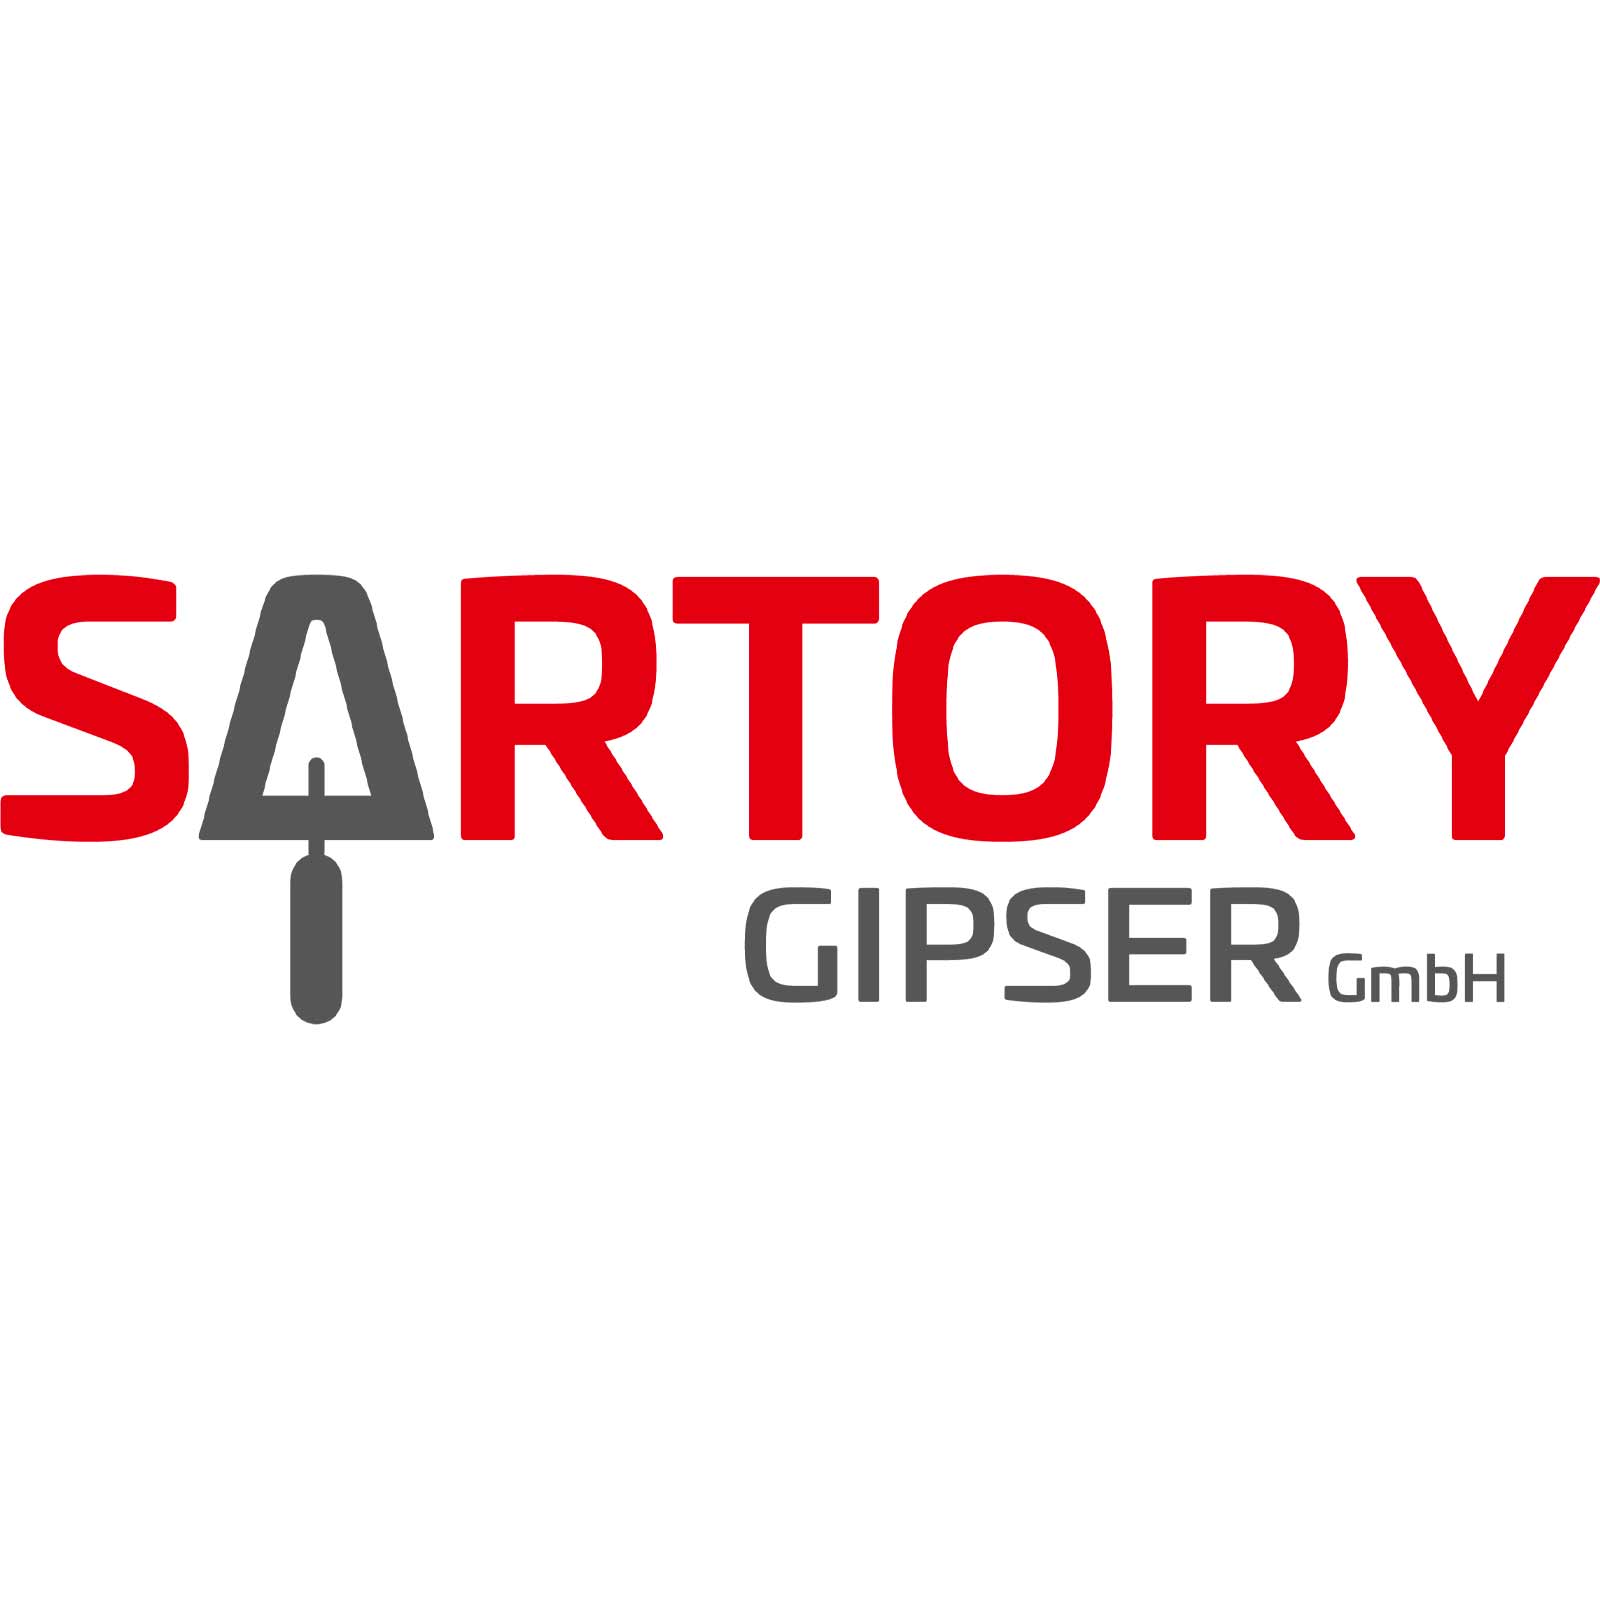 Sartory Gipser GmbH Full-Service Digital Agentur für Web-Design, Online-Shop Realisierungen, SEO, Graphic-Design, Fotografie, Foto-Retouching und Digital Photo-Composing ShowMyProject Basel